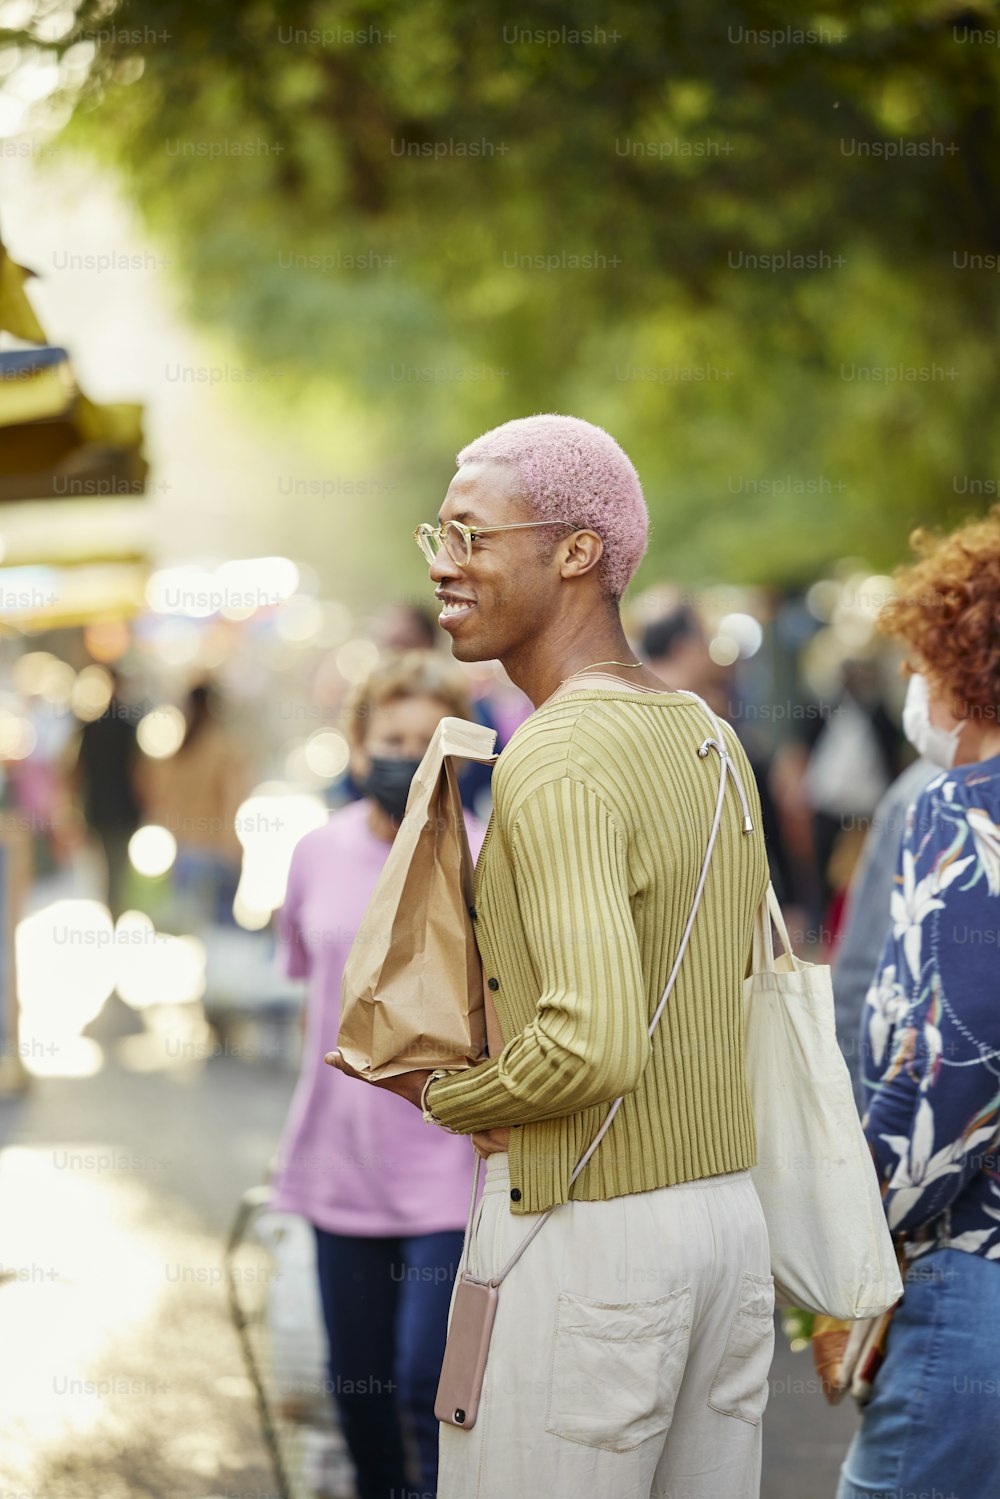 Un homme avec un mohawk rose debout dans une rue